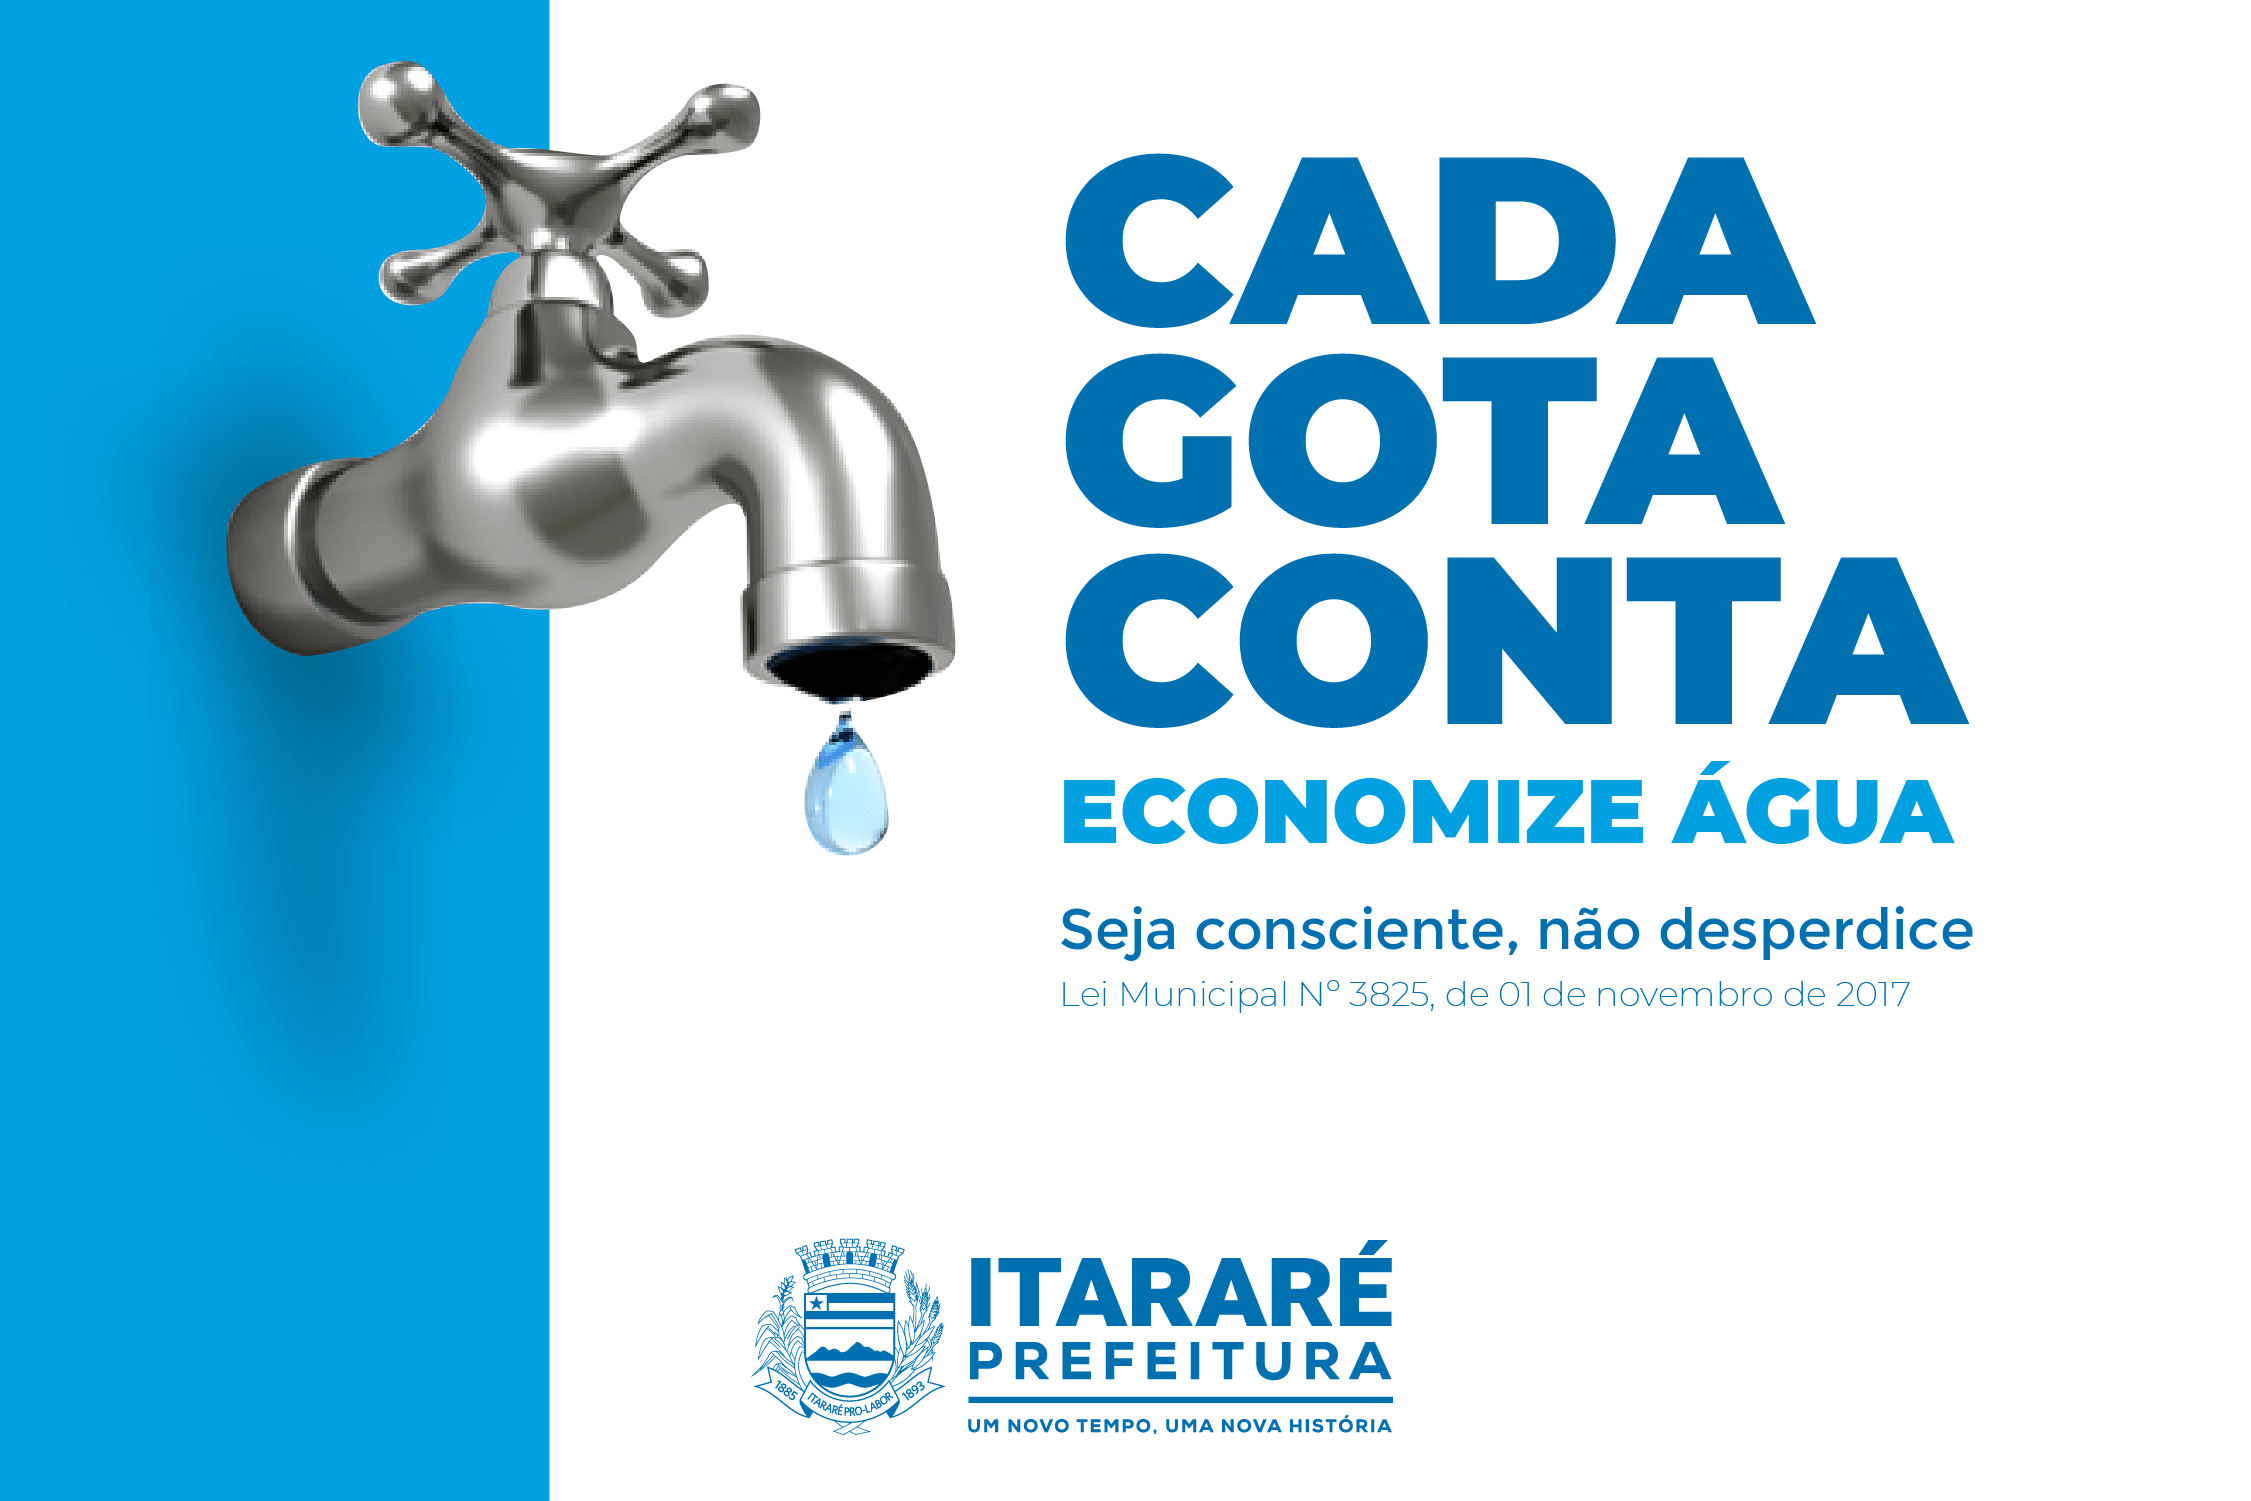 Prefeitura de Itararé (SP) alerta sobre uso consciente de água